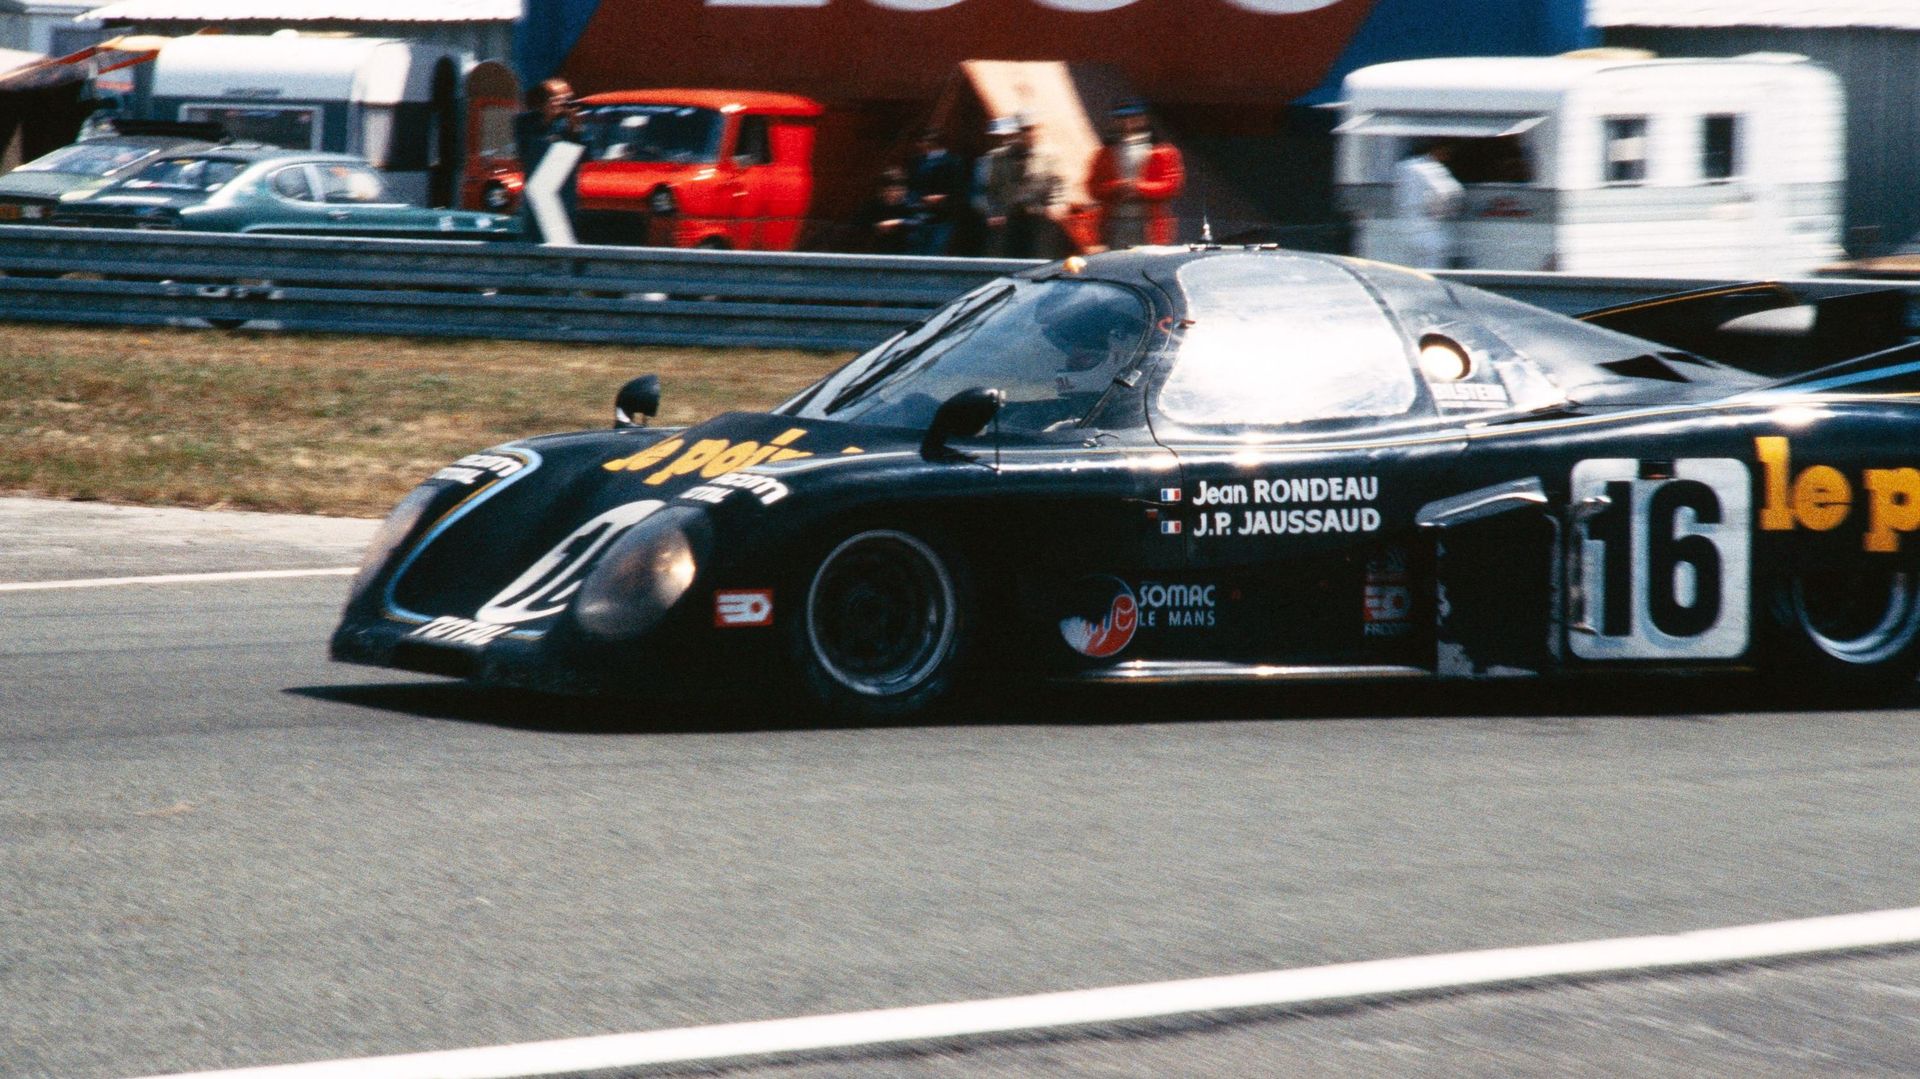 La voiture de Jean Rondeau lors des essais de 1980